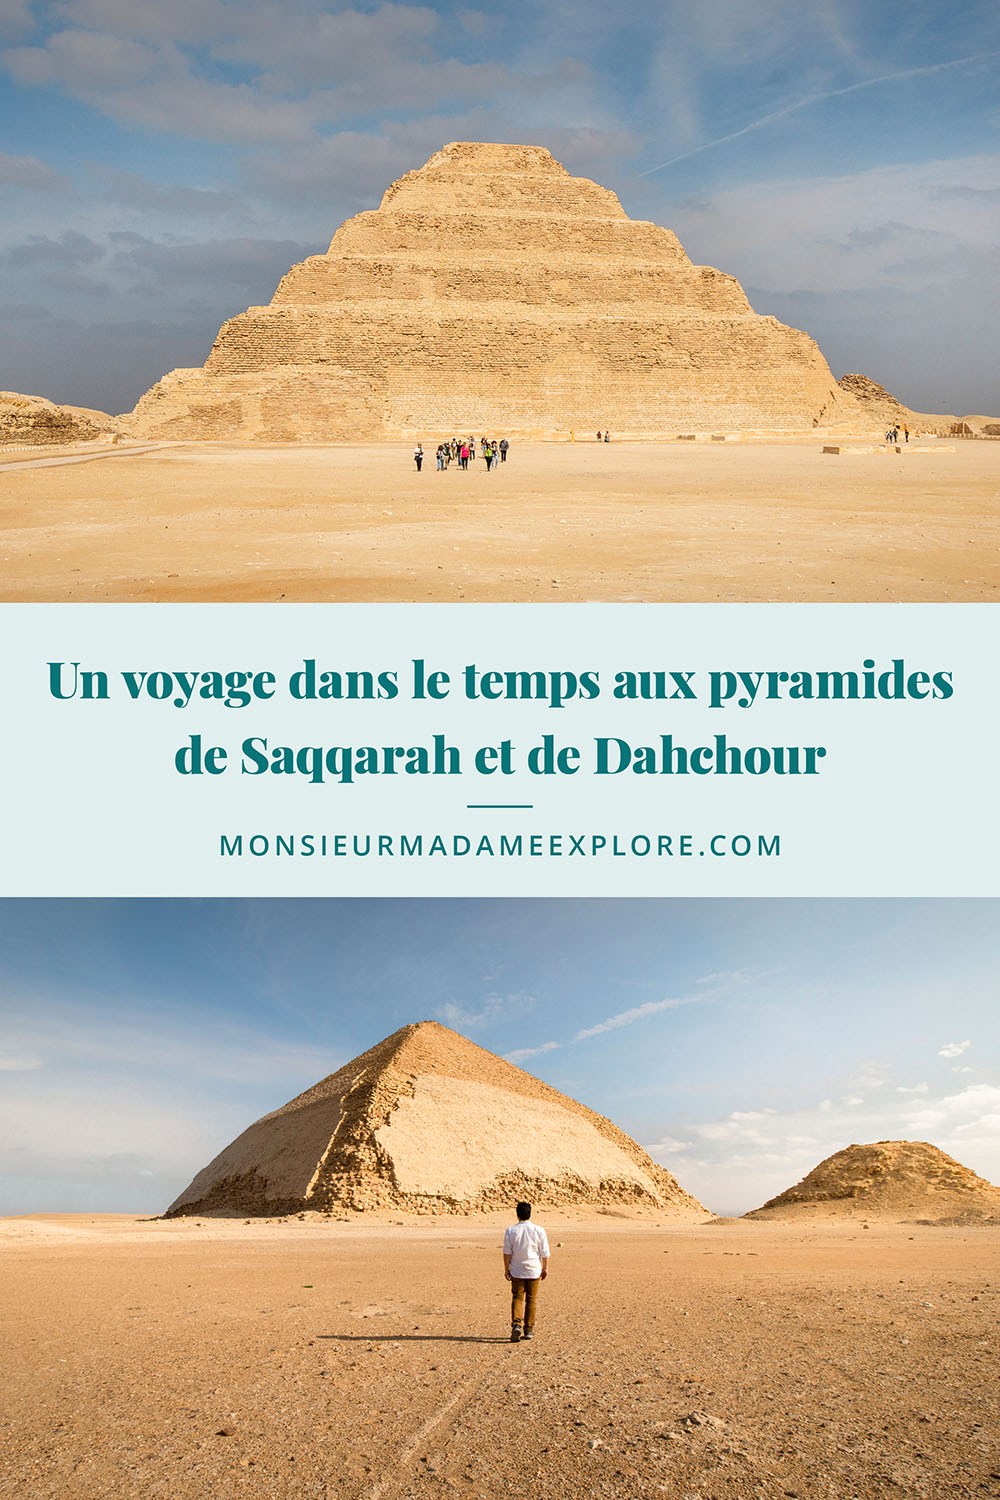 Un voyage dans le temps aux pyramides de Saqqarah et de Dahchour, Monsieur+Madame Explore, Blogue de voyage, Égypte / Visiting Saqqara and Dahchour pyramids, Egypt